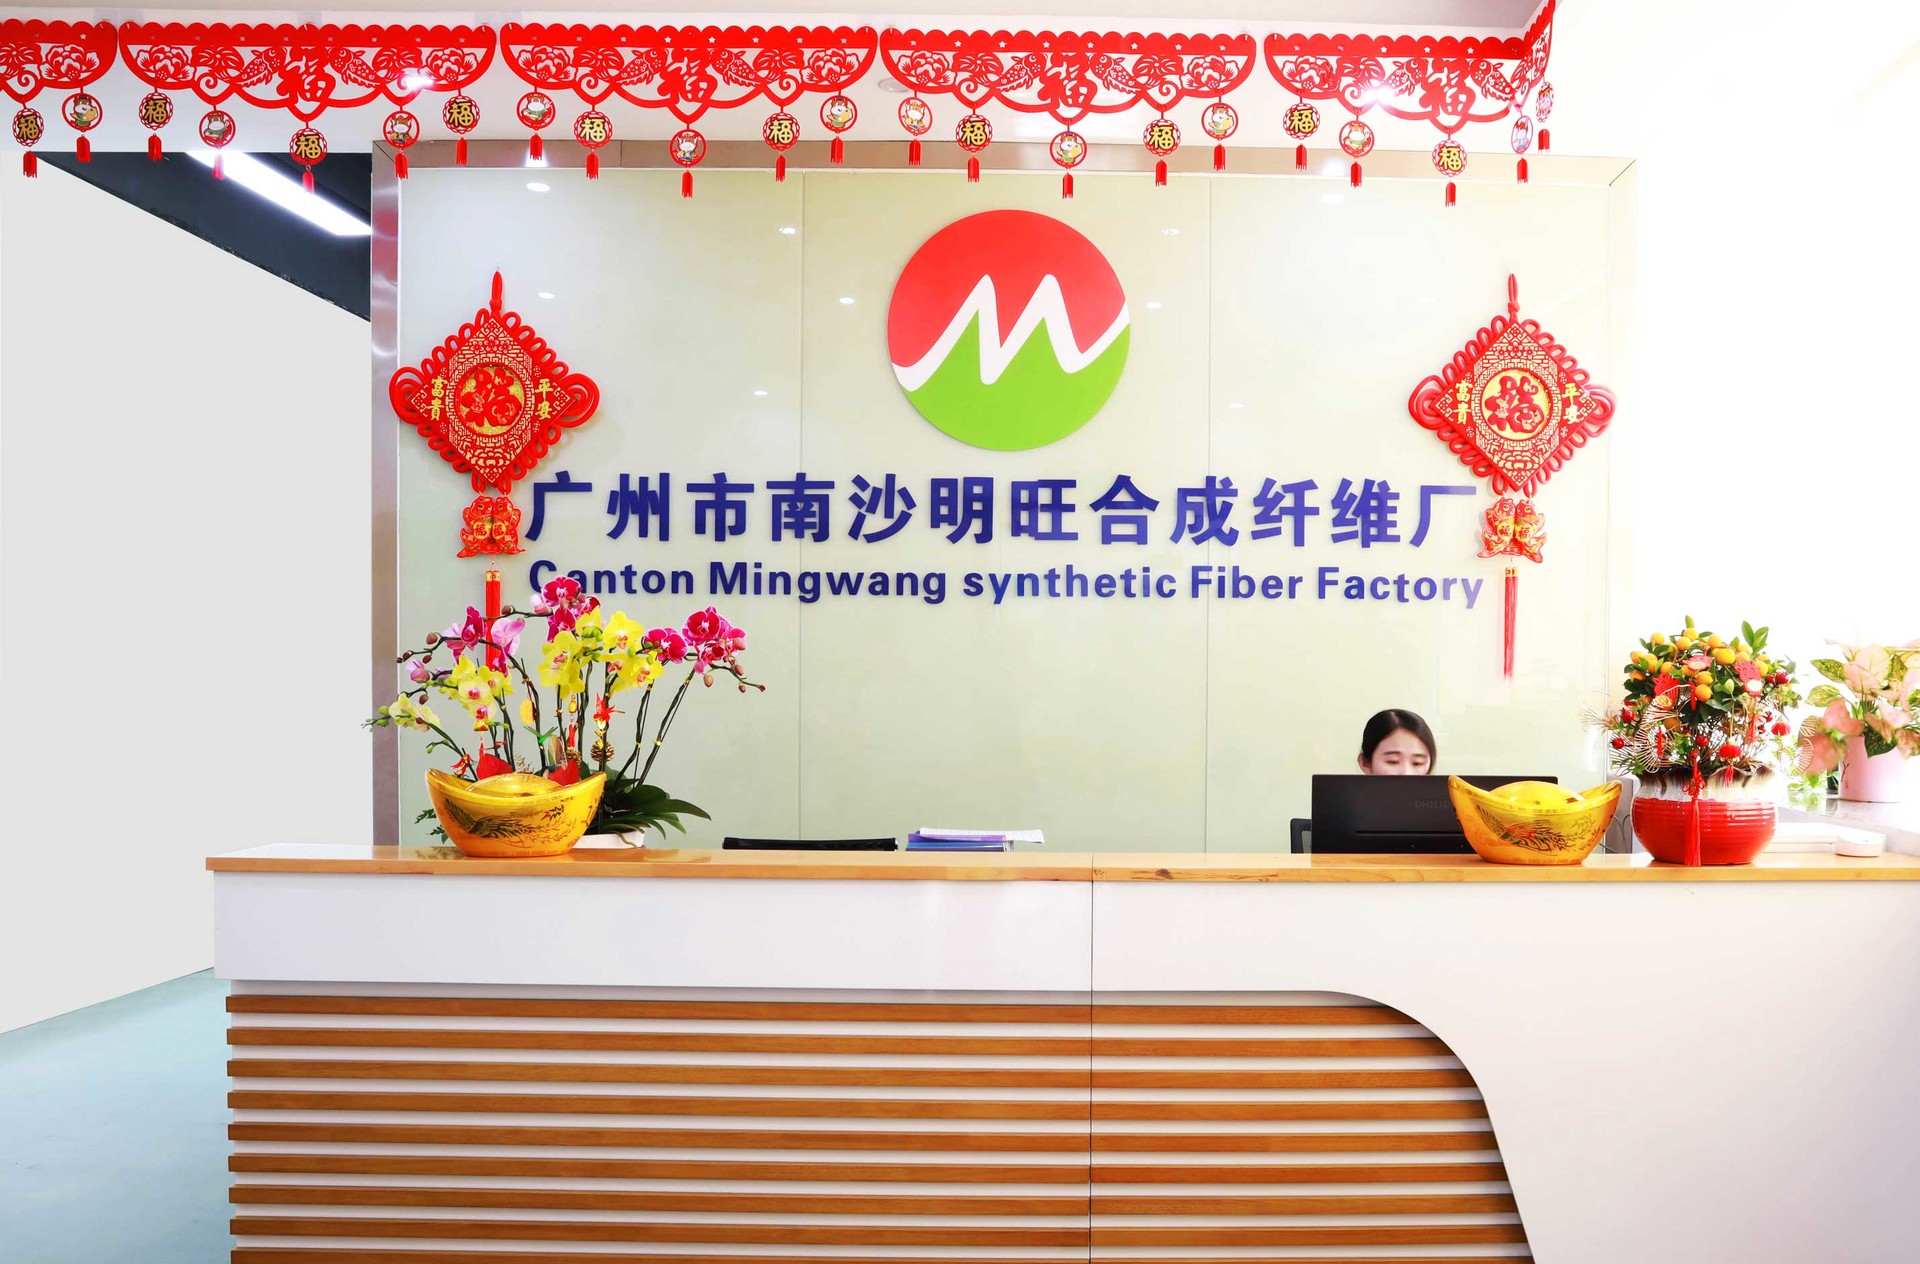 2021 Brush Bristle Filament Manufacturer Guangzhou Ming Wang Factory Video - MWFilament